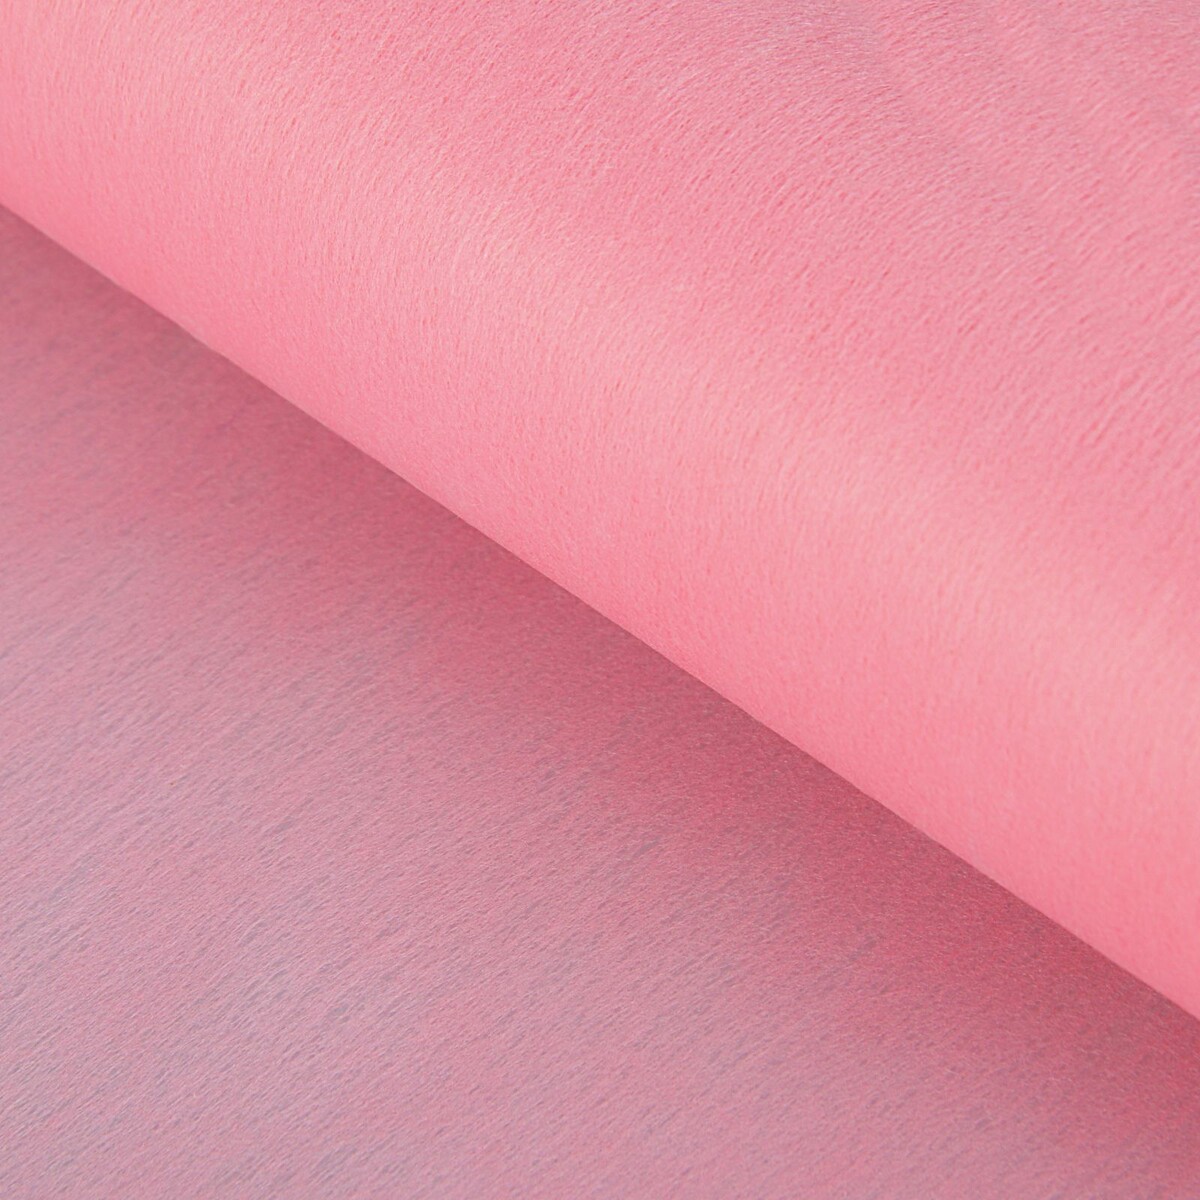 Фетр для упаковок и поделок, однотонный, розовый, двусторонний, рулон 1шт., 0,5 x 20 м фетр для упаковок и поделок однотонный салатовый зеленый двусторонний рулон 1шт 0 5 x 20 м